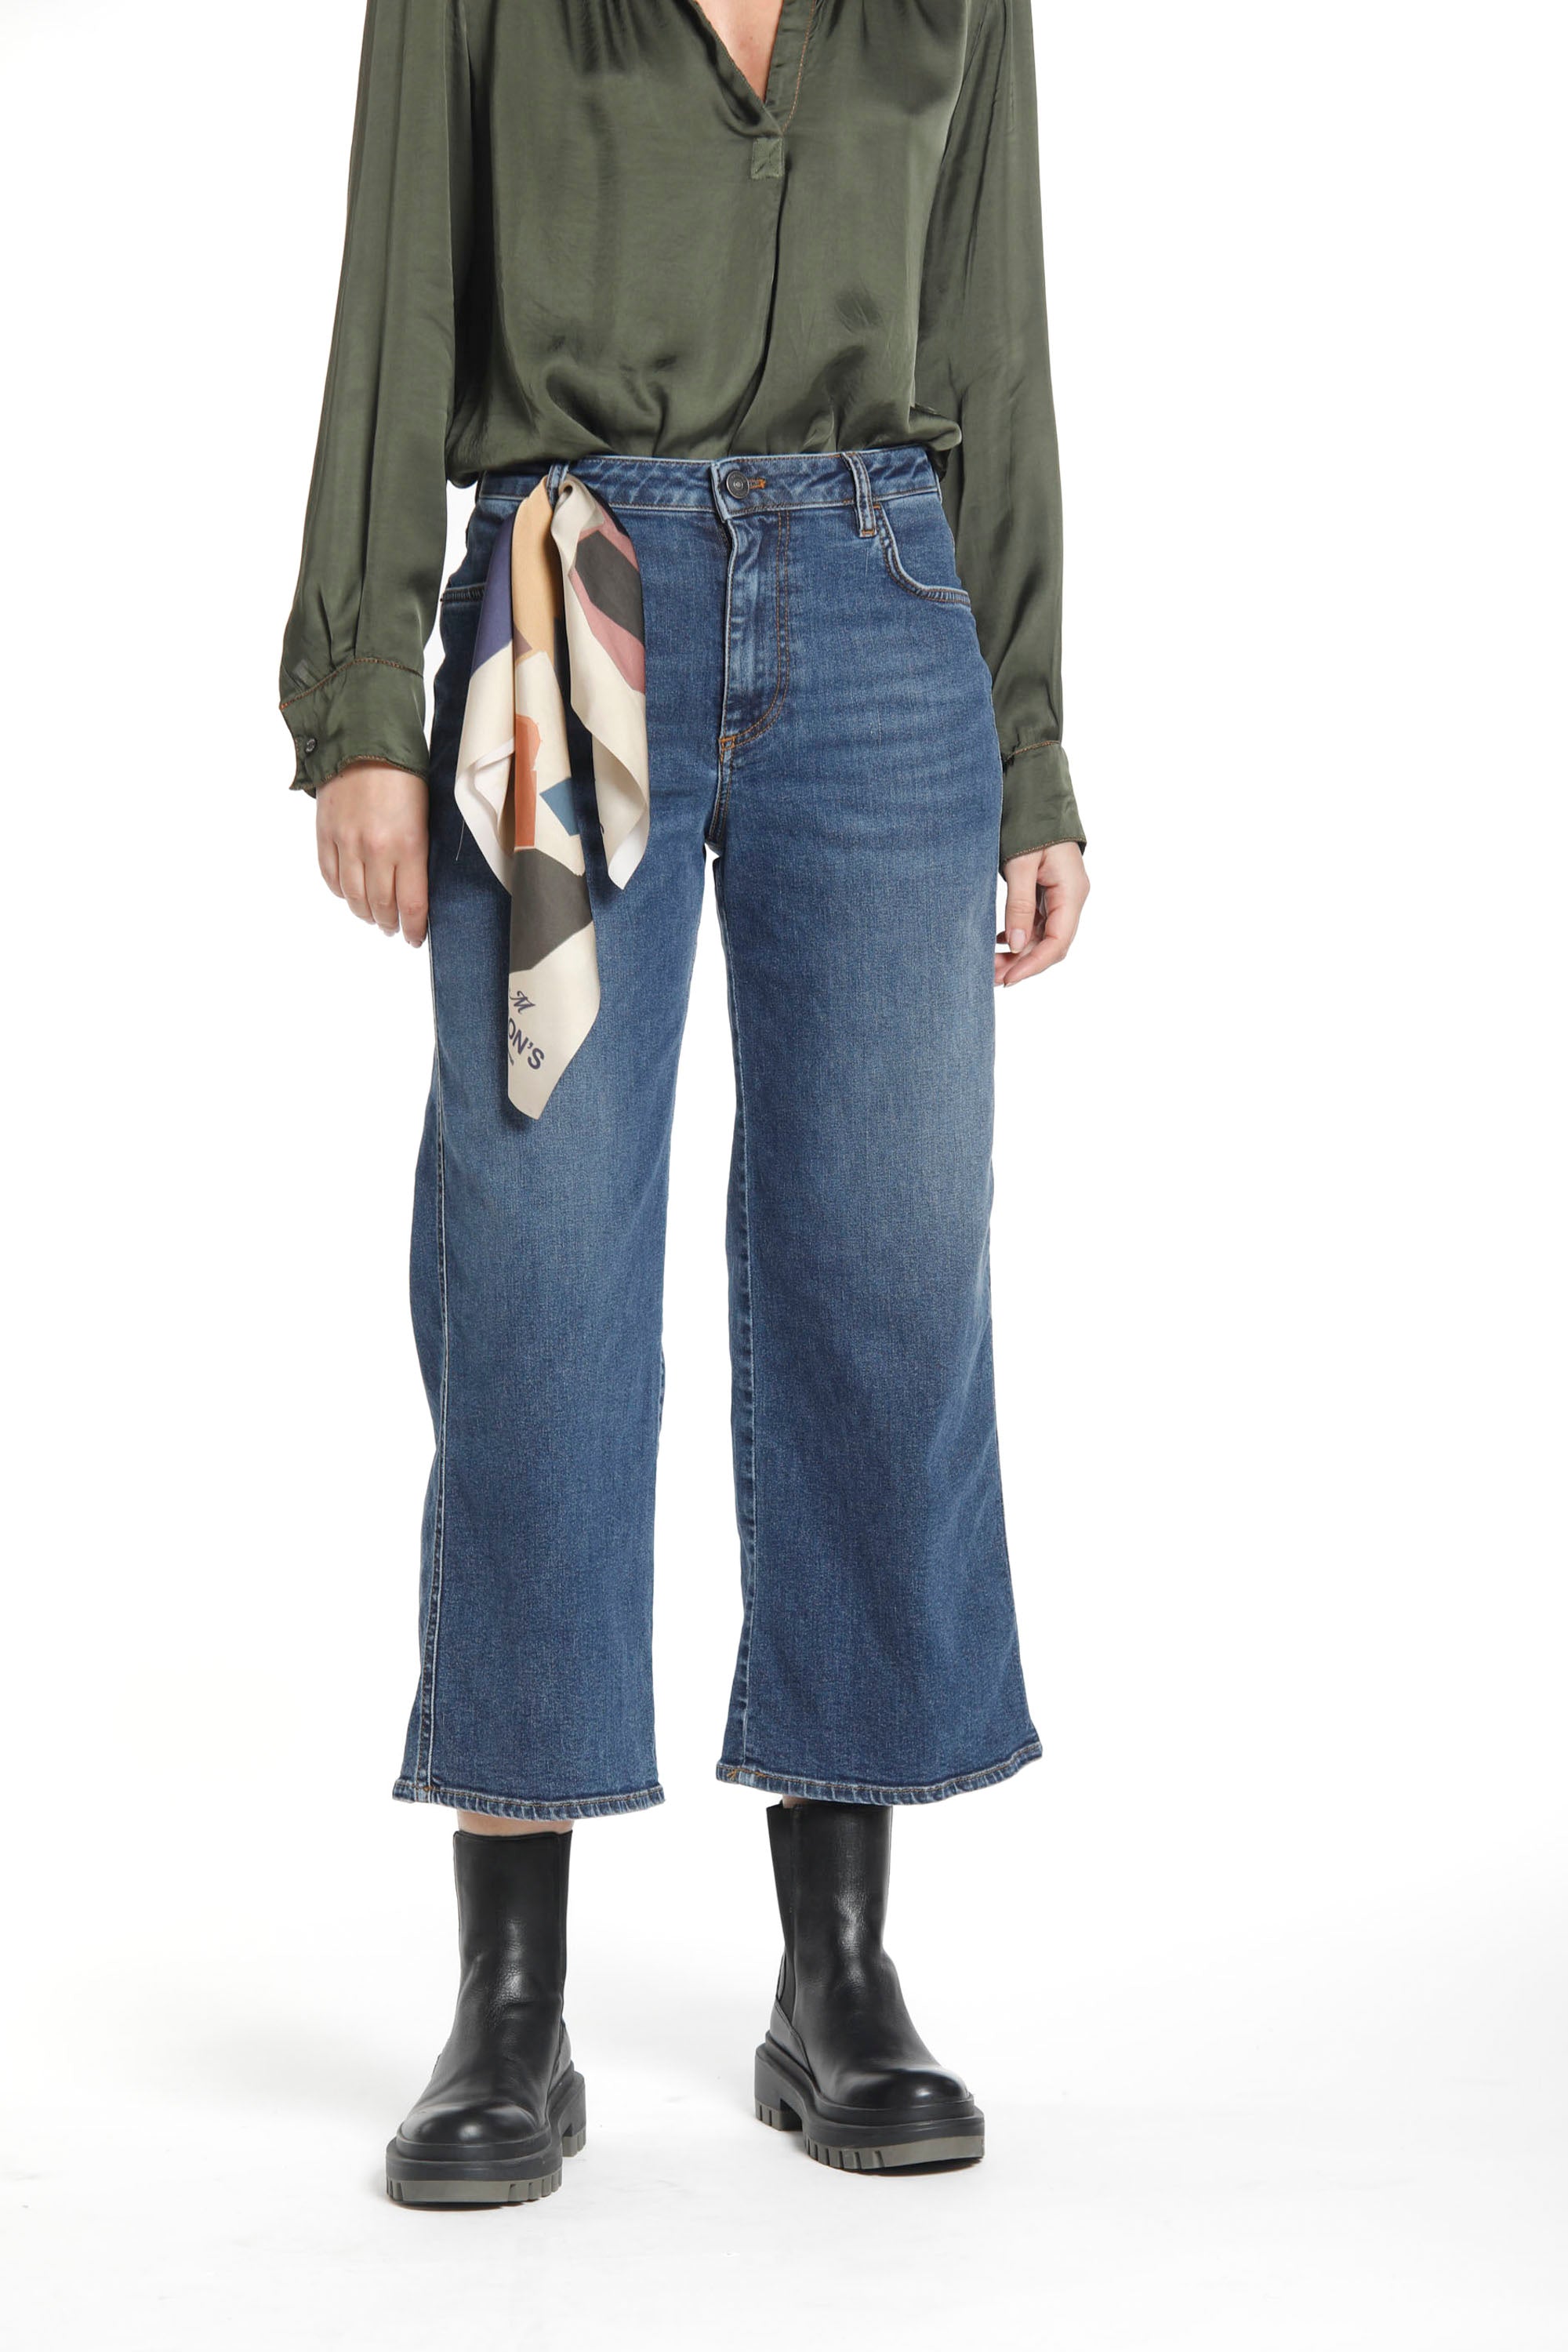 Bild 1 Damenjeans mit 5 Taschen aus Stretch-Denim-Material NavyBlau Modell Samantha von Mason's